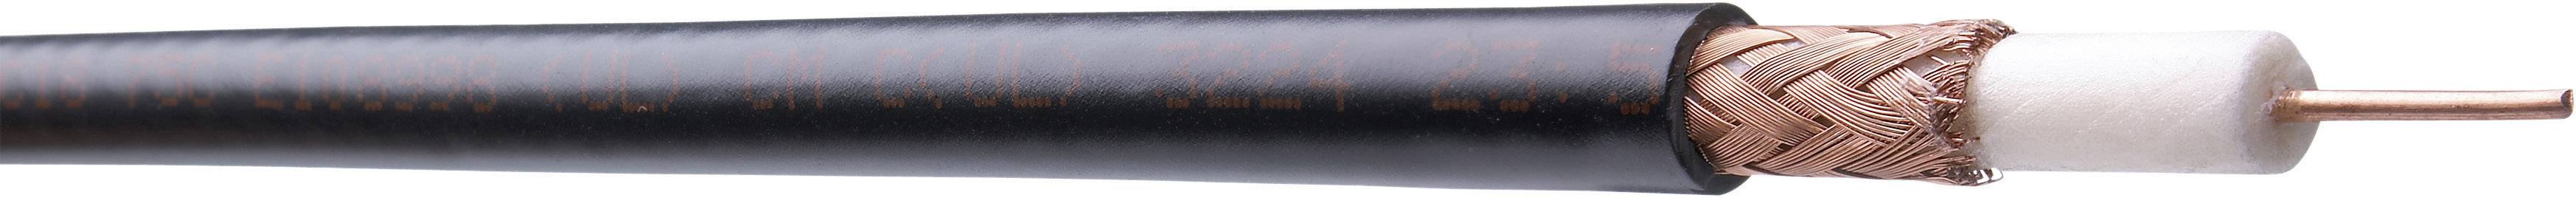 HIRSCHMANN Koaxialkabel Außen-Durchmesser: 6.15 mm RG59 50 ¿ Schwarz Belden MRG5900.00B100 Meterware